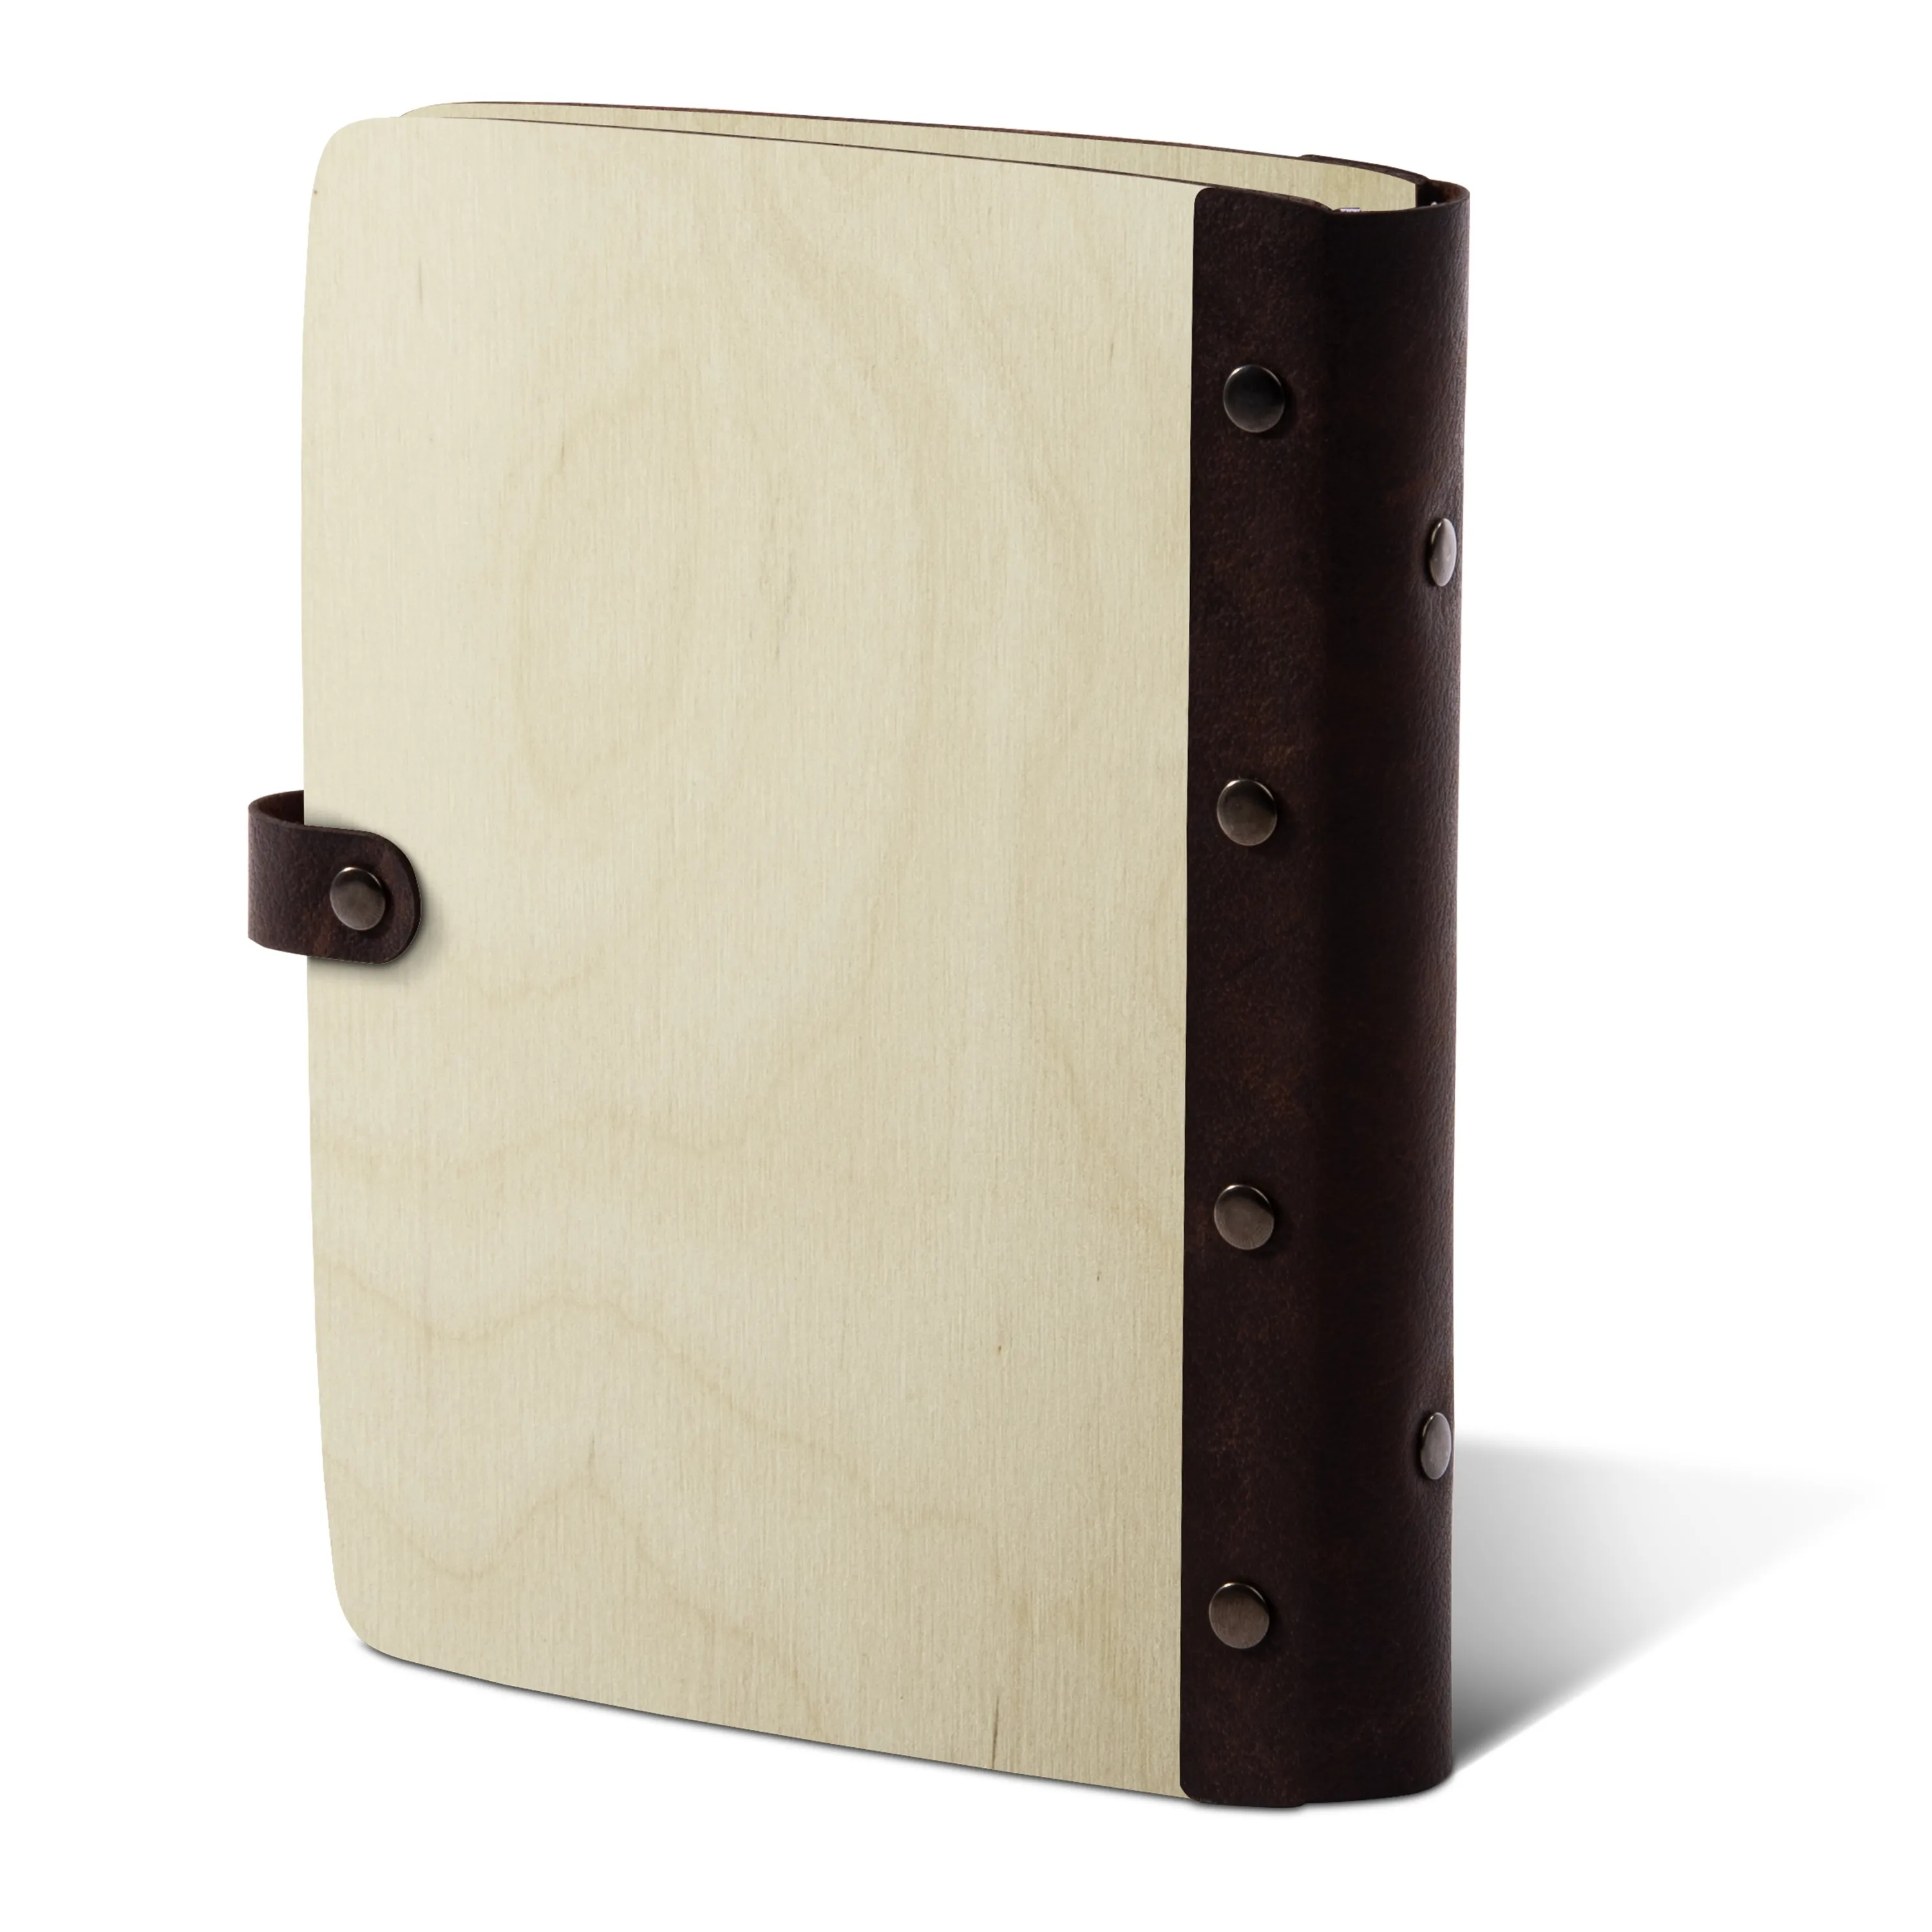 Personalisiertes Notizbuch Birkensperrholz mit Lederrücken - Eigene Gravurdatei hochladen